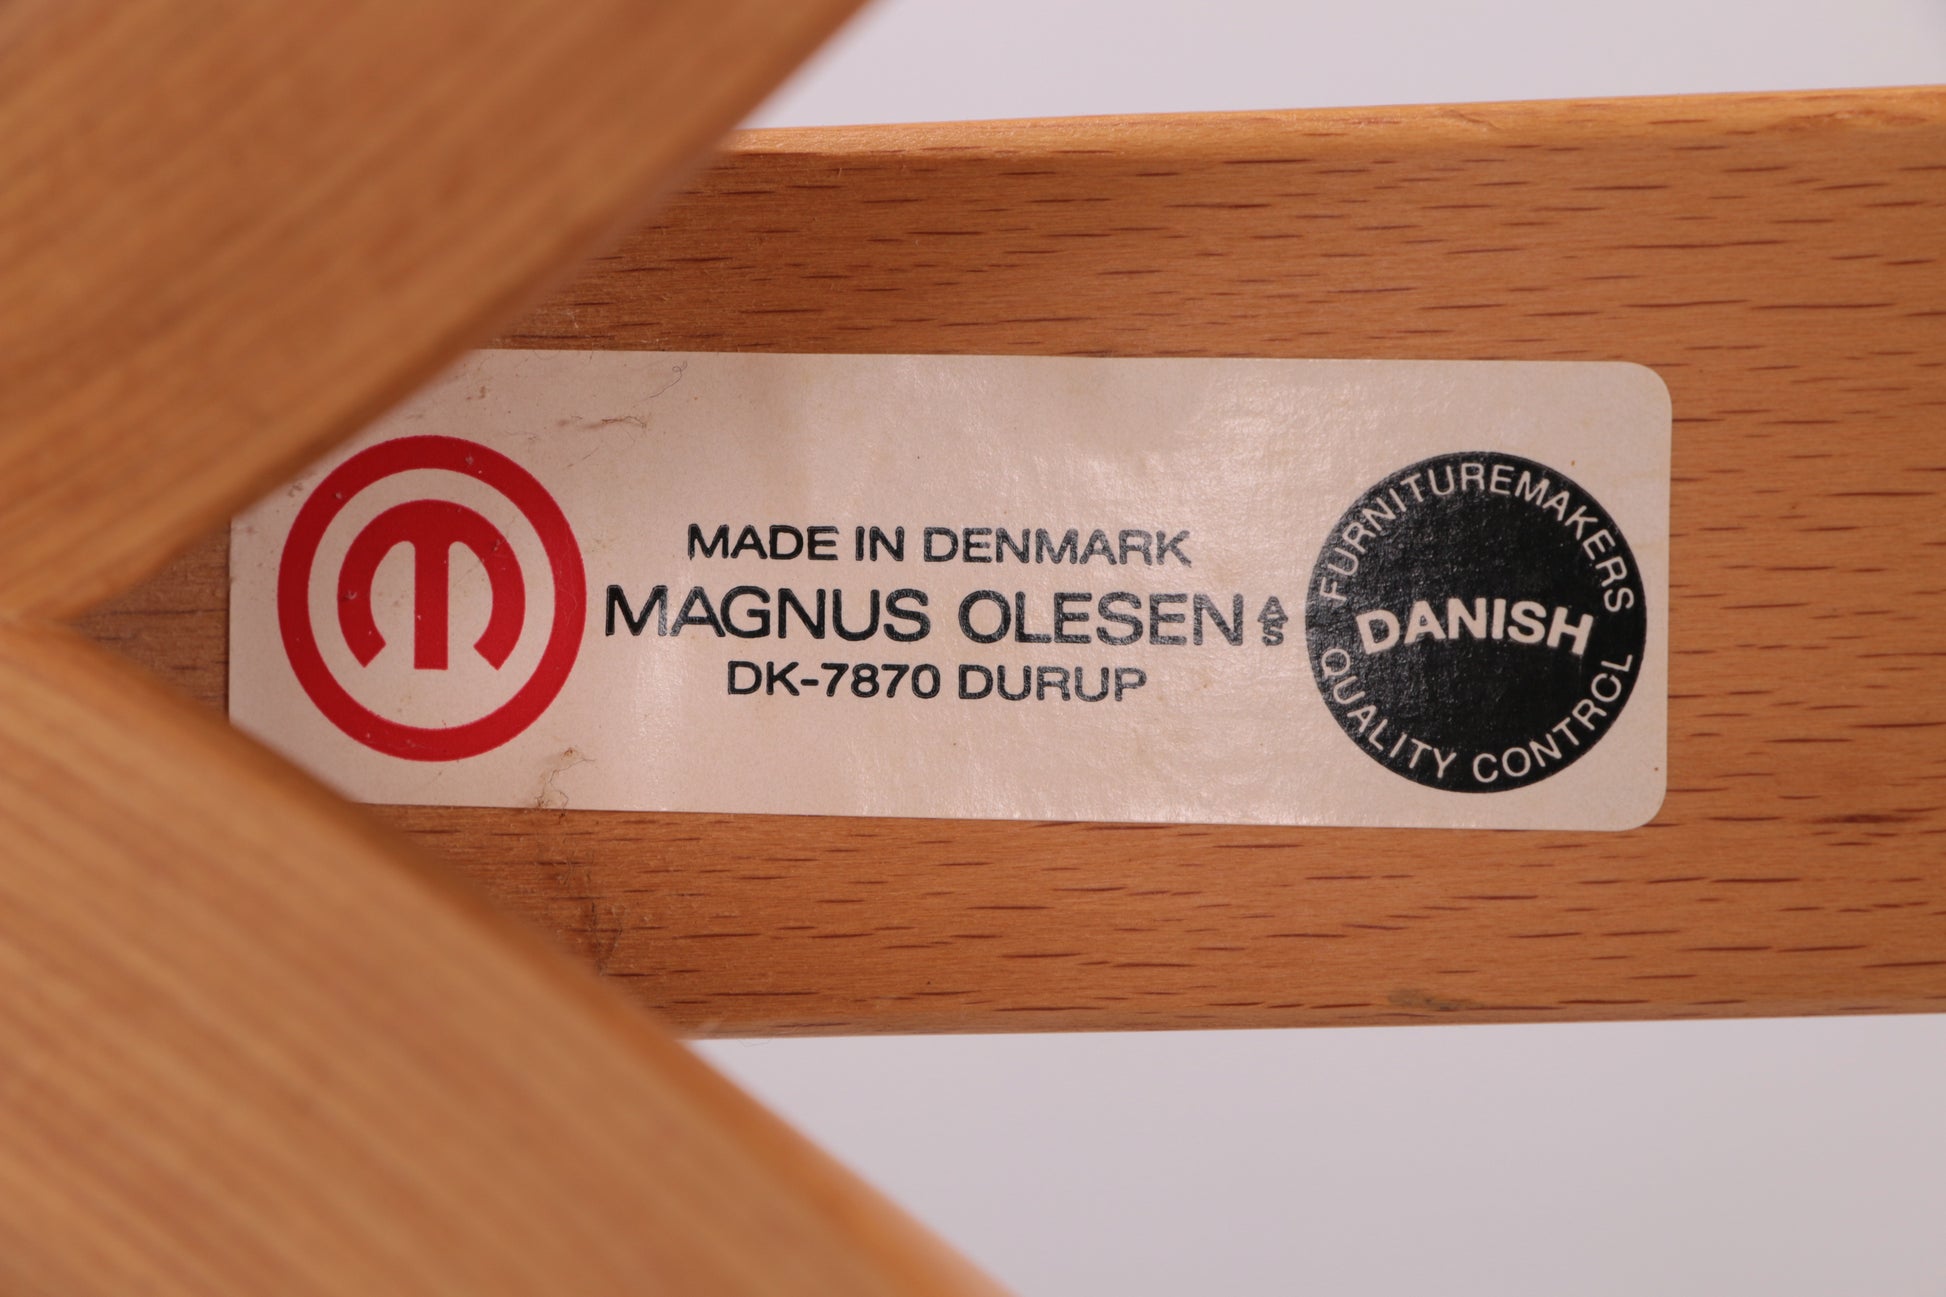 Deens Design kapstok ontwerp van Magnus Olesen gemaakt bij Durup,1970